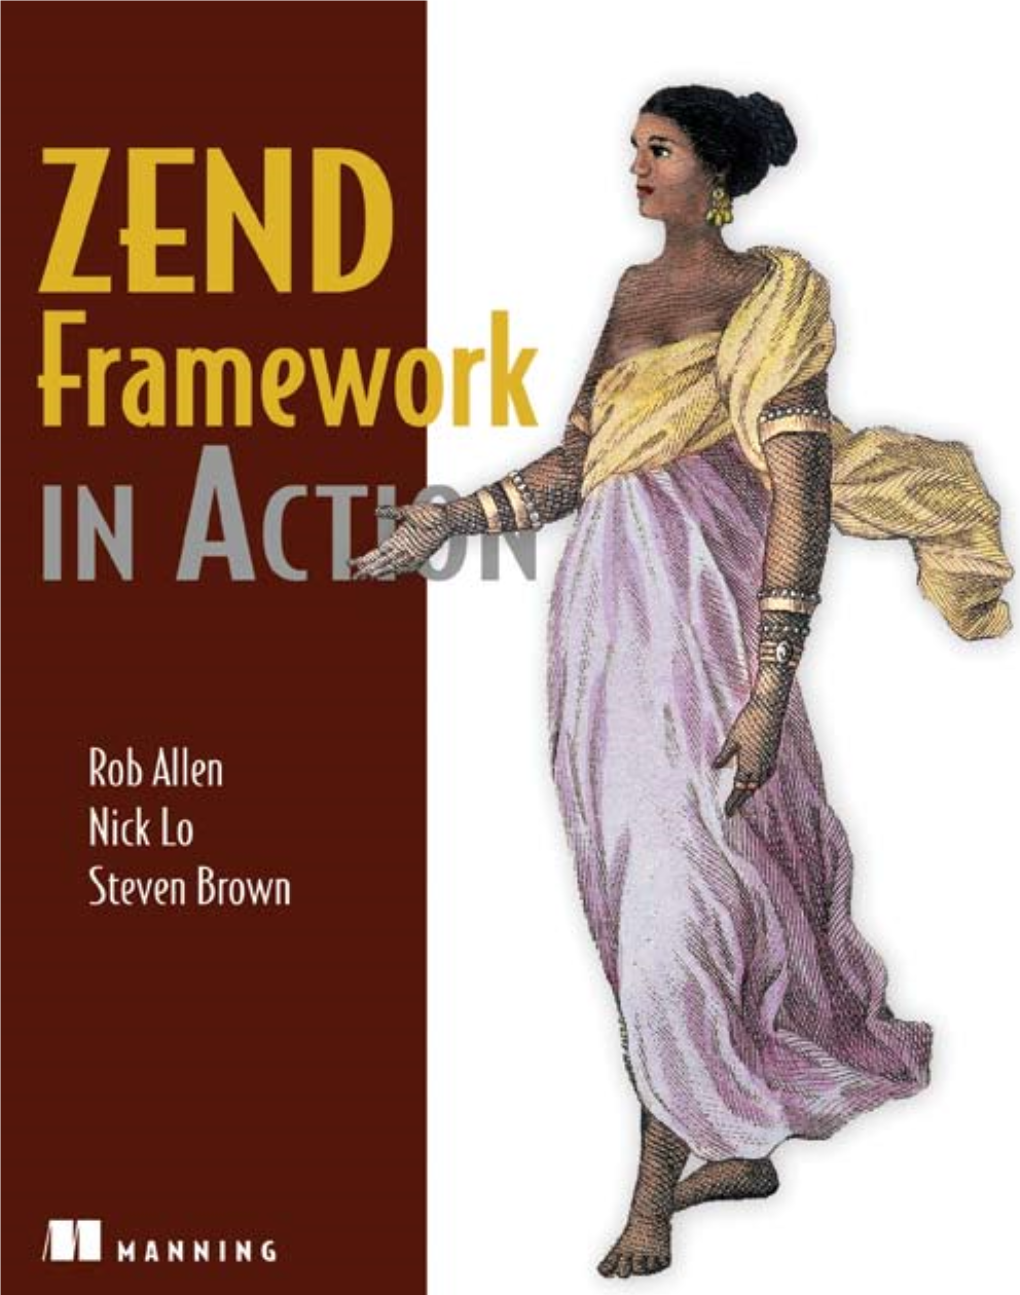 Zend Framework in Action (Manning 2009).Pdf